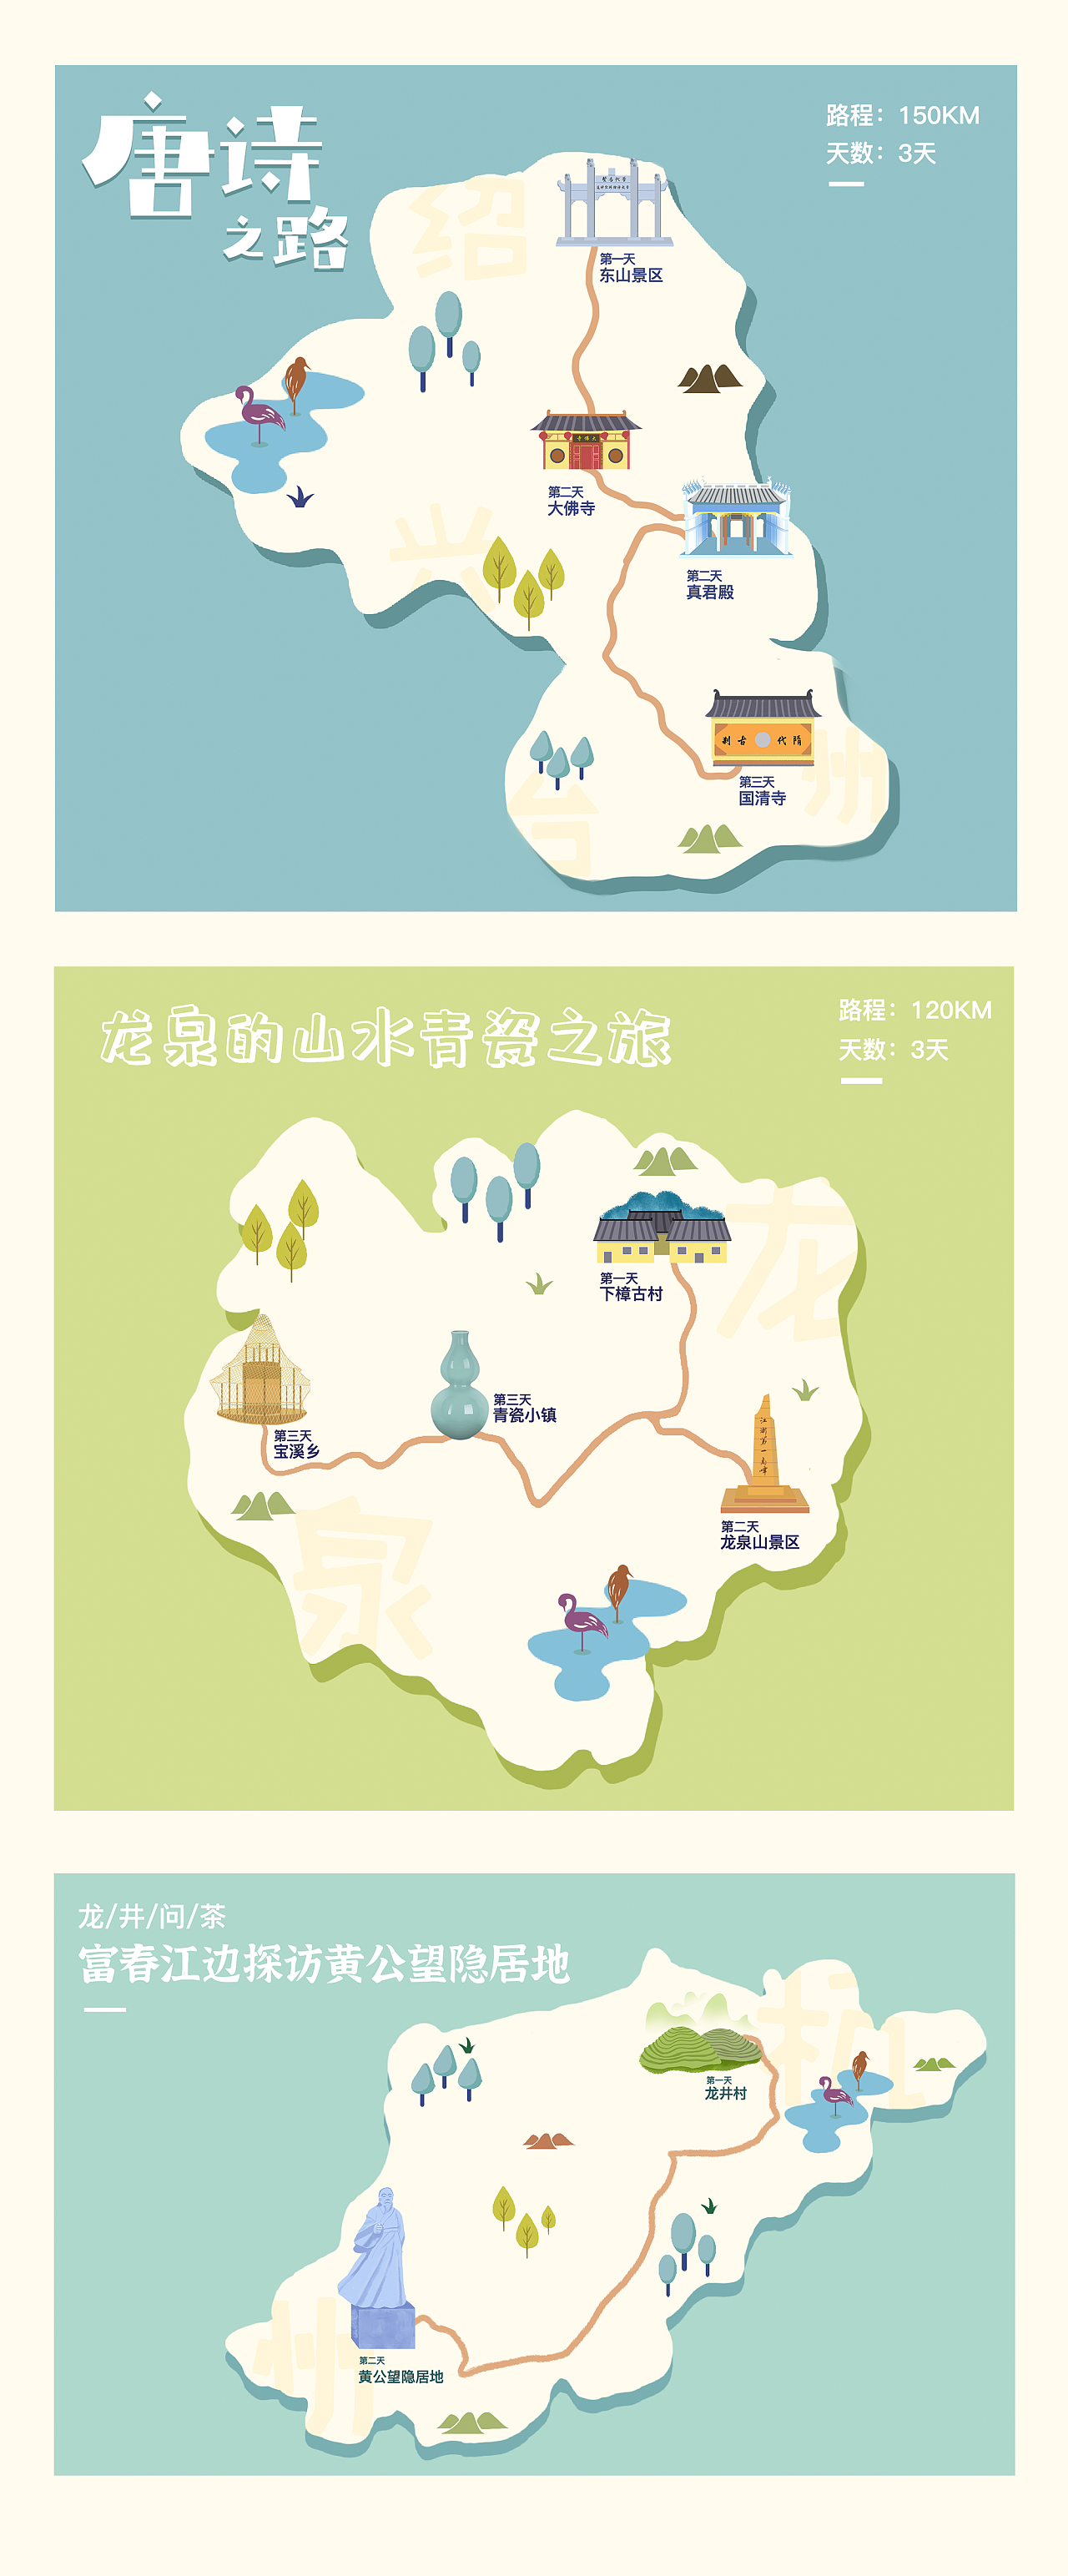 上海旅游路线 上海旅游最佳线路和景点 - 旅游推荐-推荐旅游景点、路线、城市、酒店等-千年旅游网